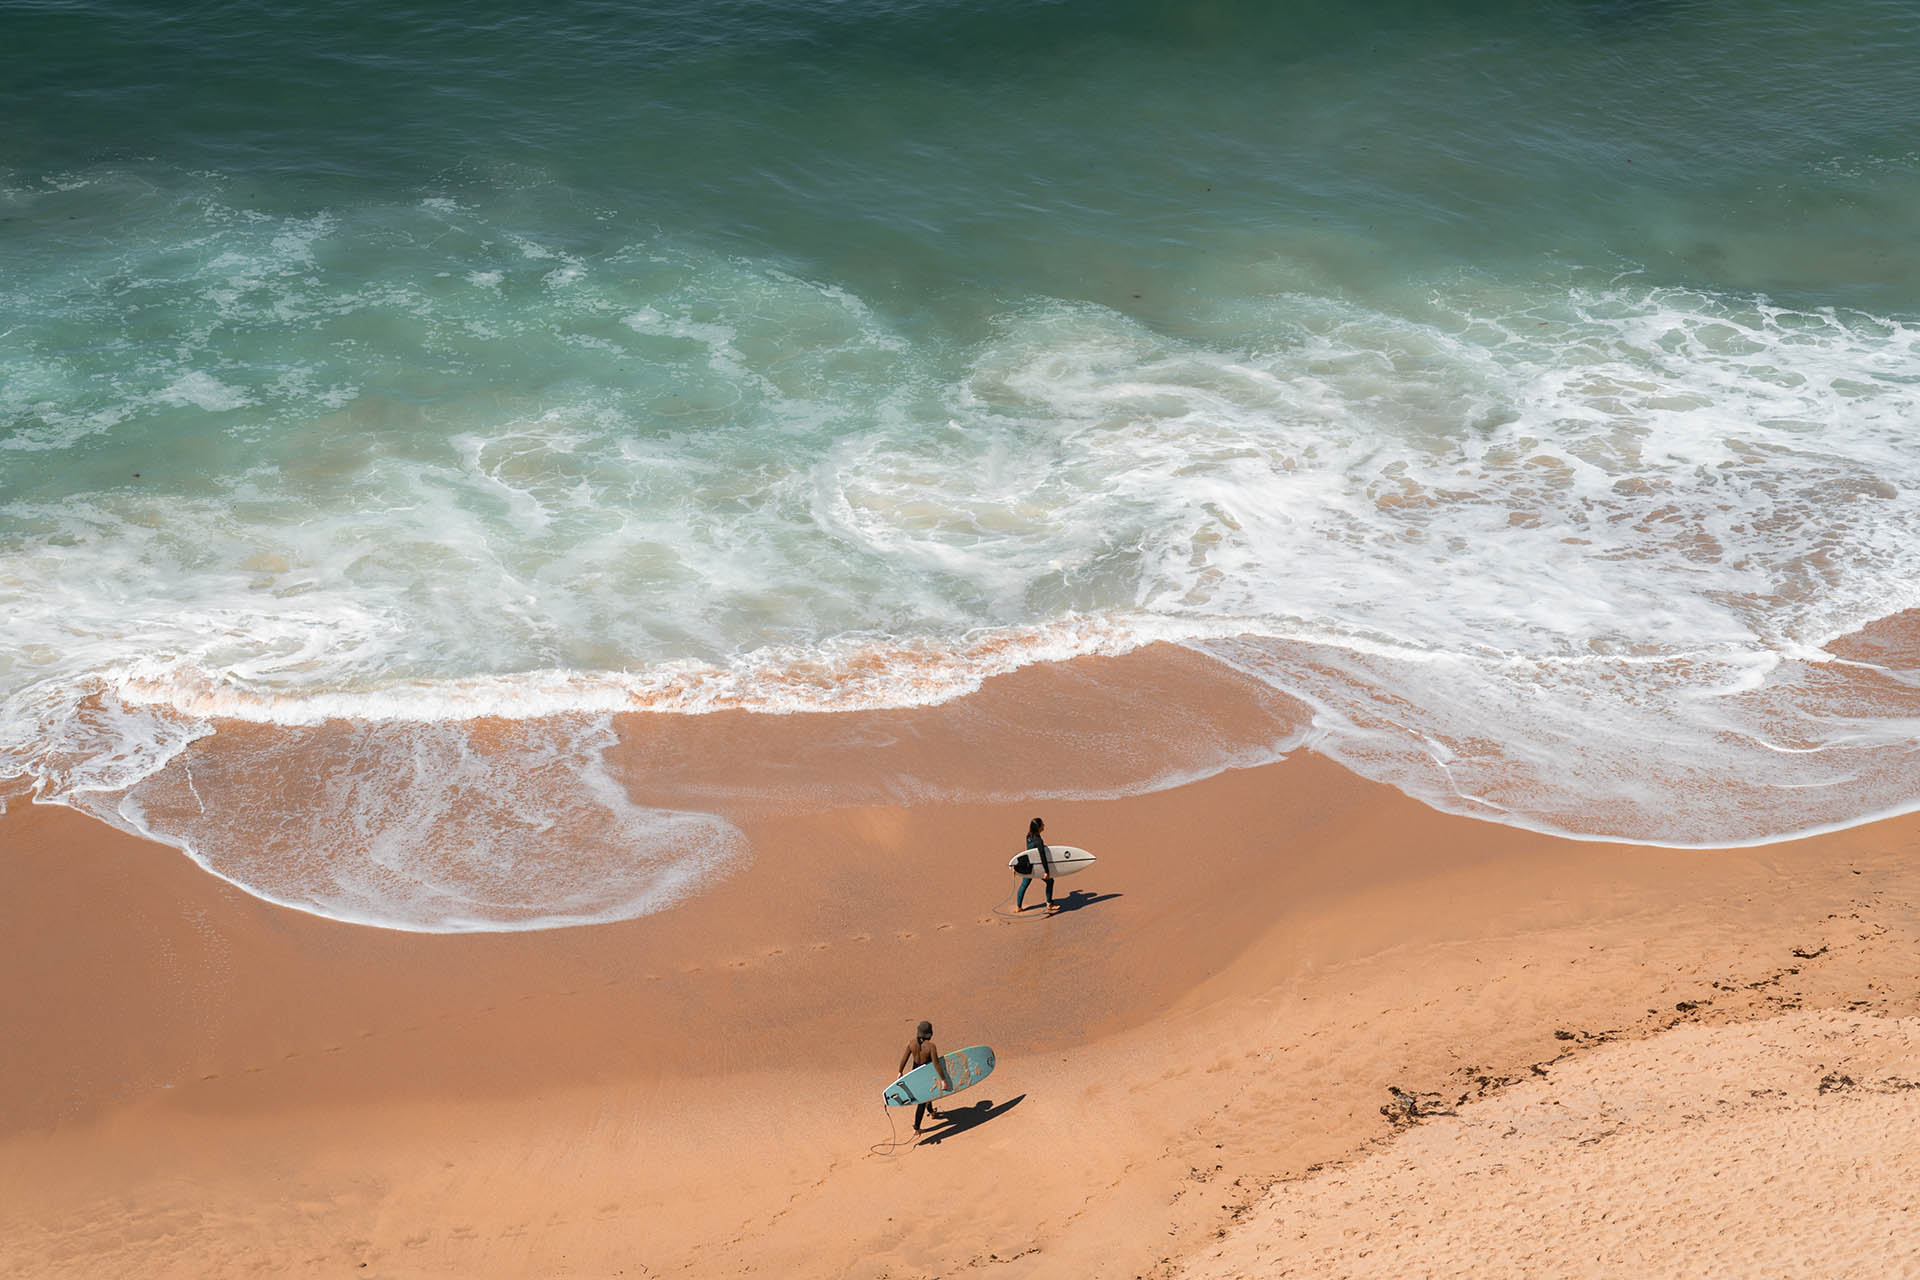 twee surfers op het strand van bovenaf gezien